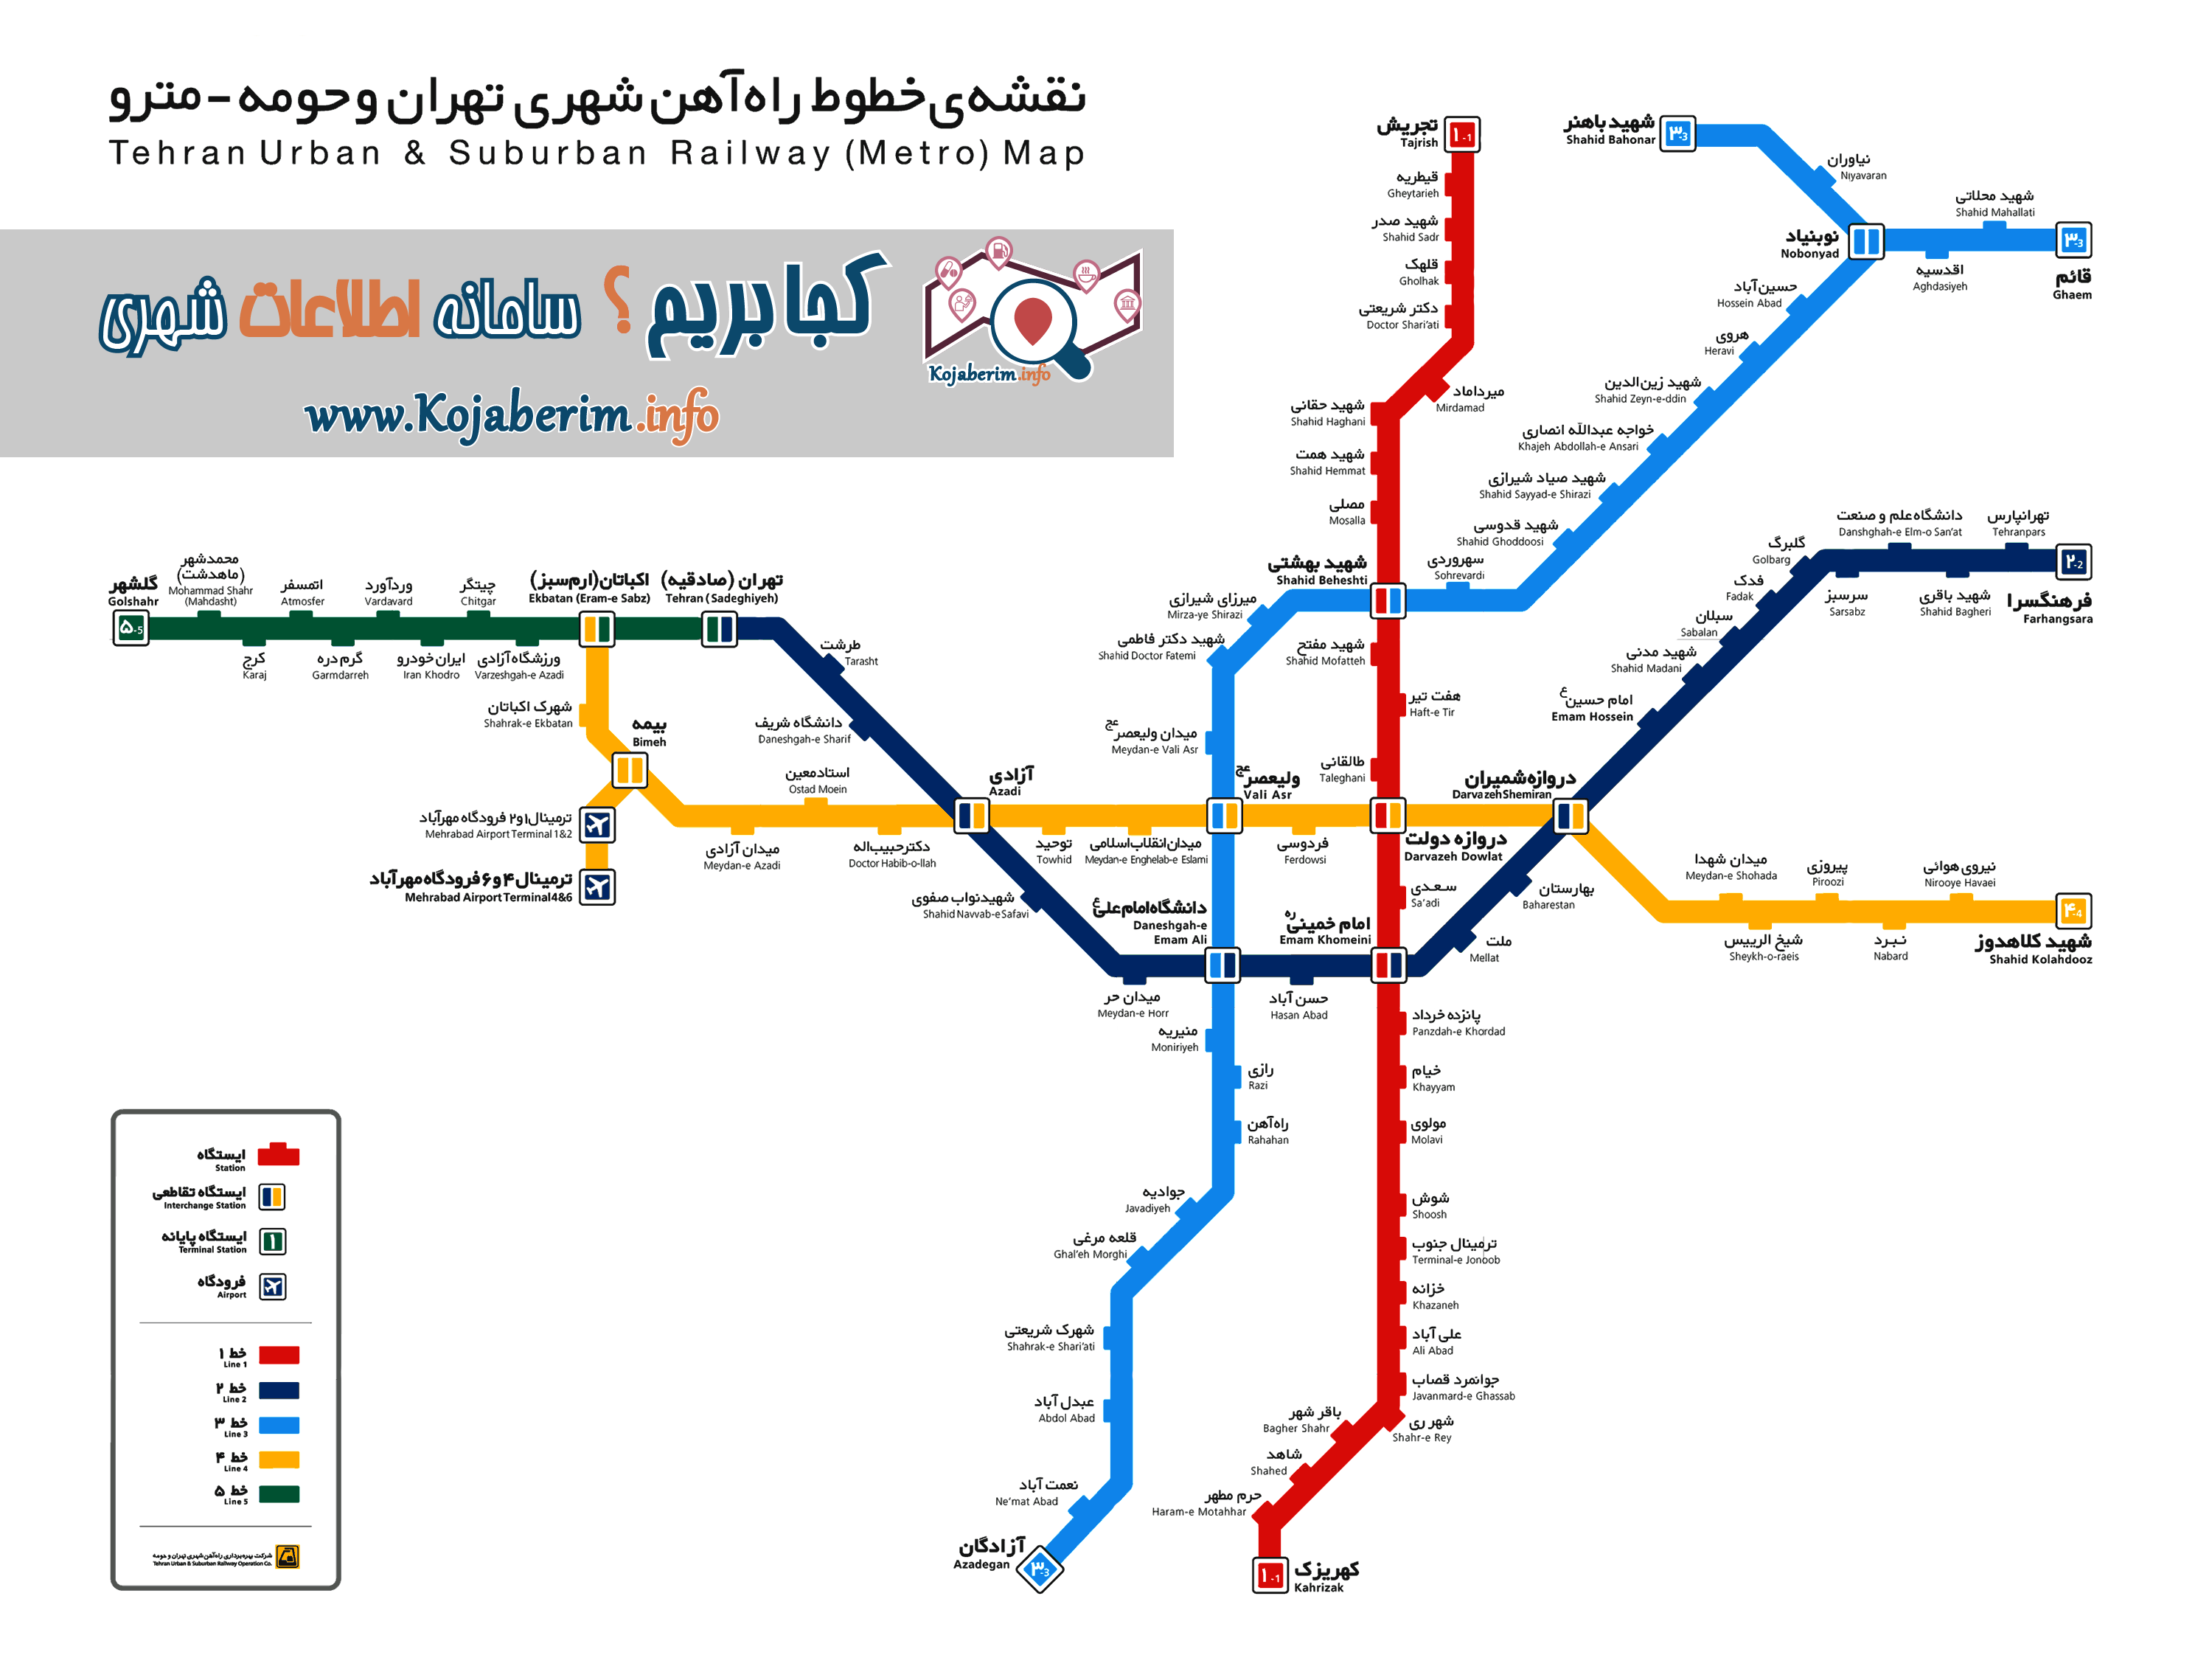 نقشه مترو 95 تهران - کجا بریم؟ kojaberim.info